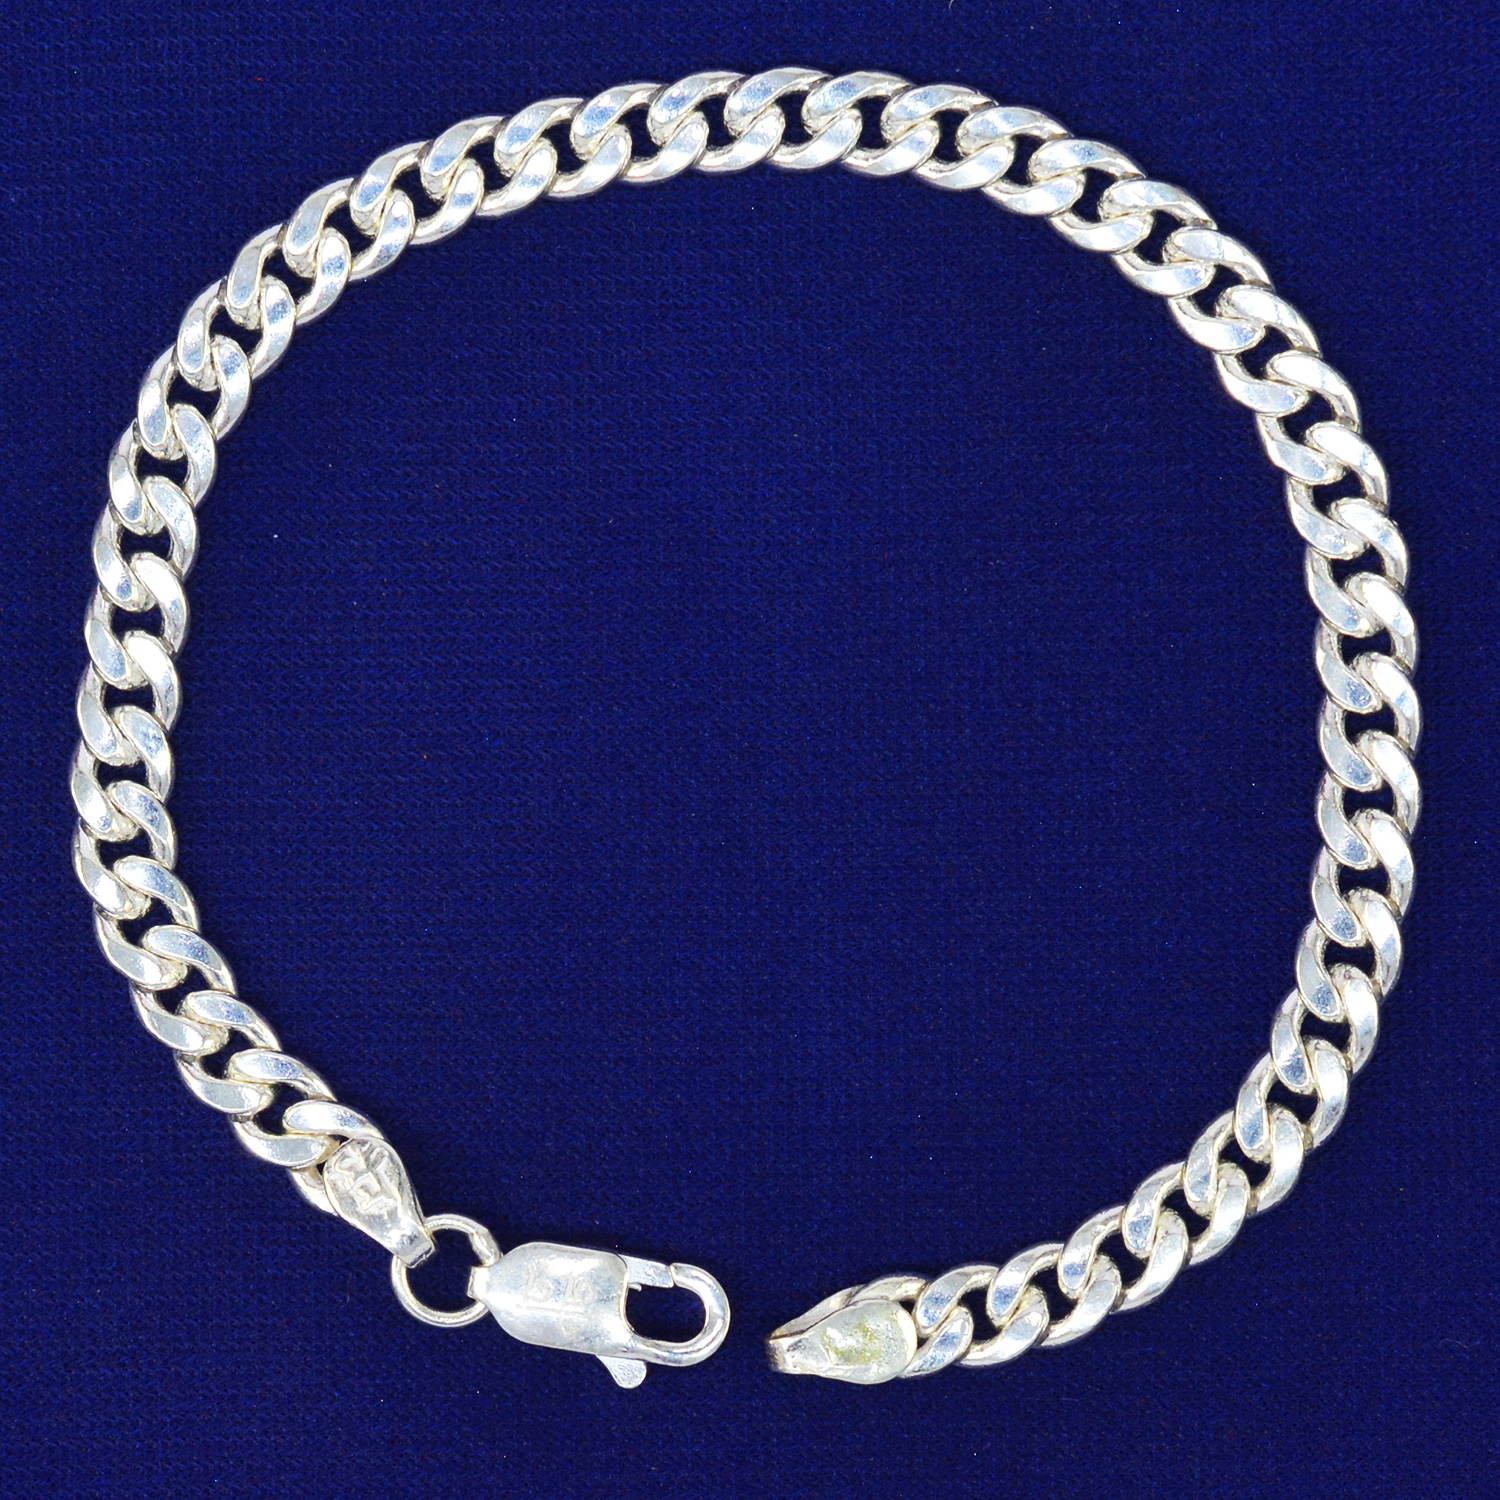 Bracelet Type Chain Pattern Pure Silver Rakhi - 14.6 Grams